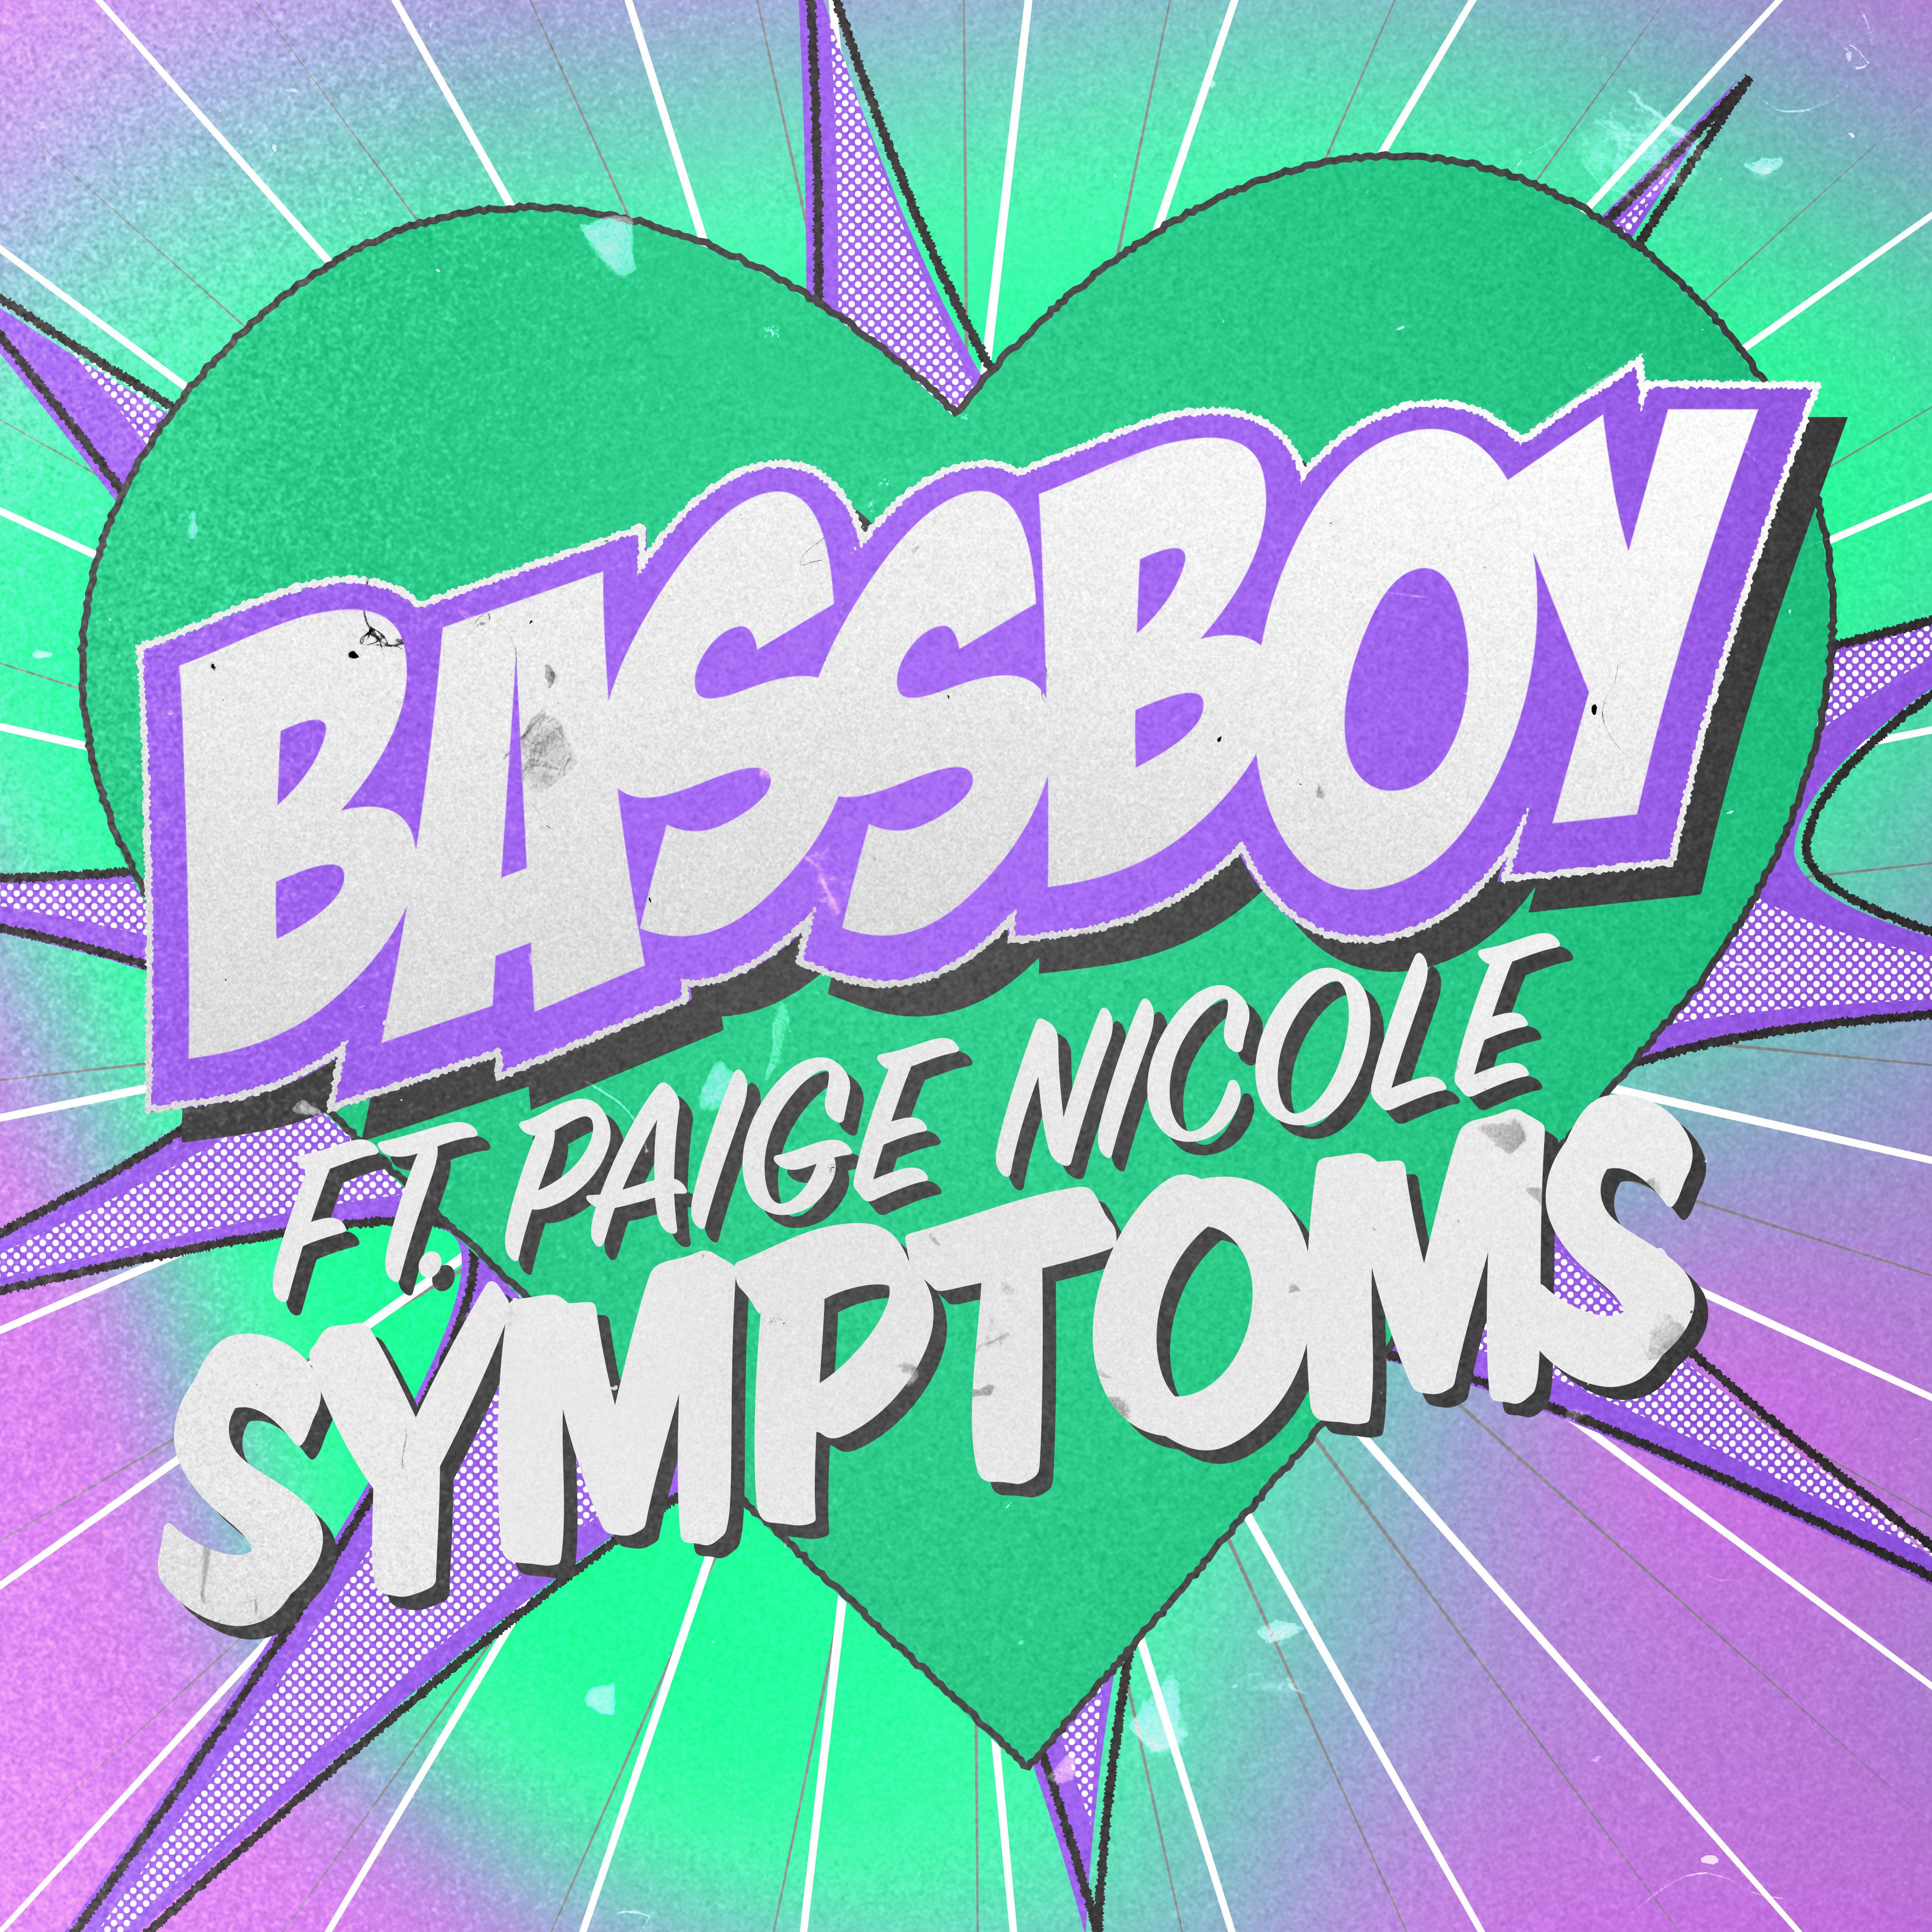 Bassboy - Symptoms (Extended Mix)